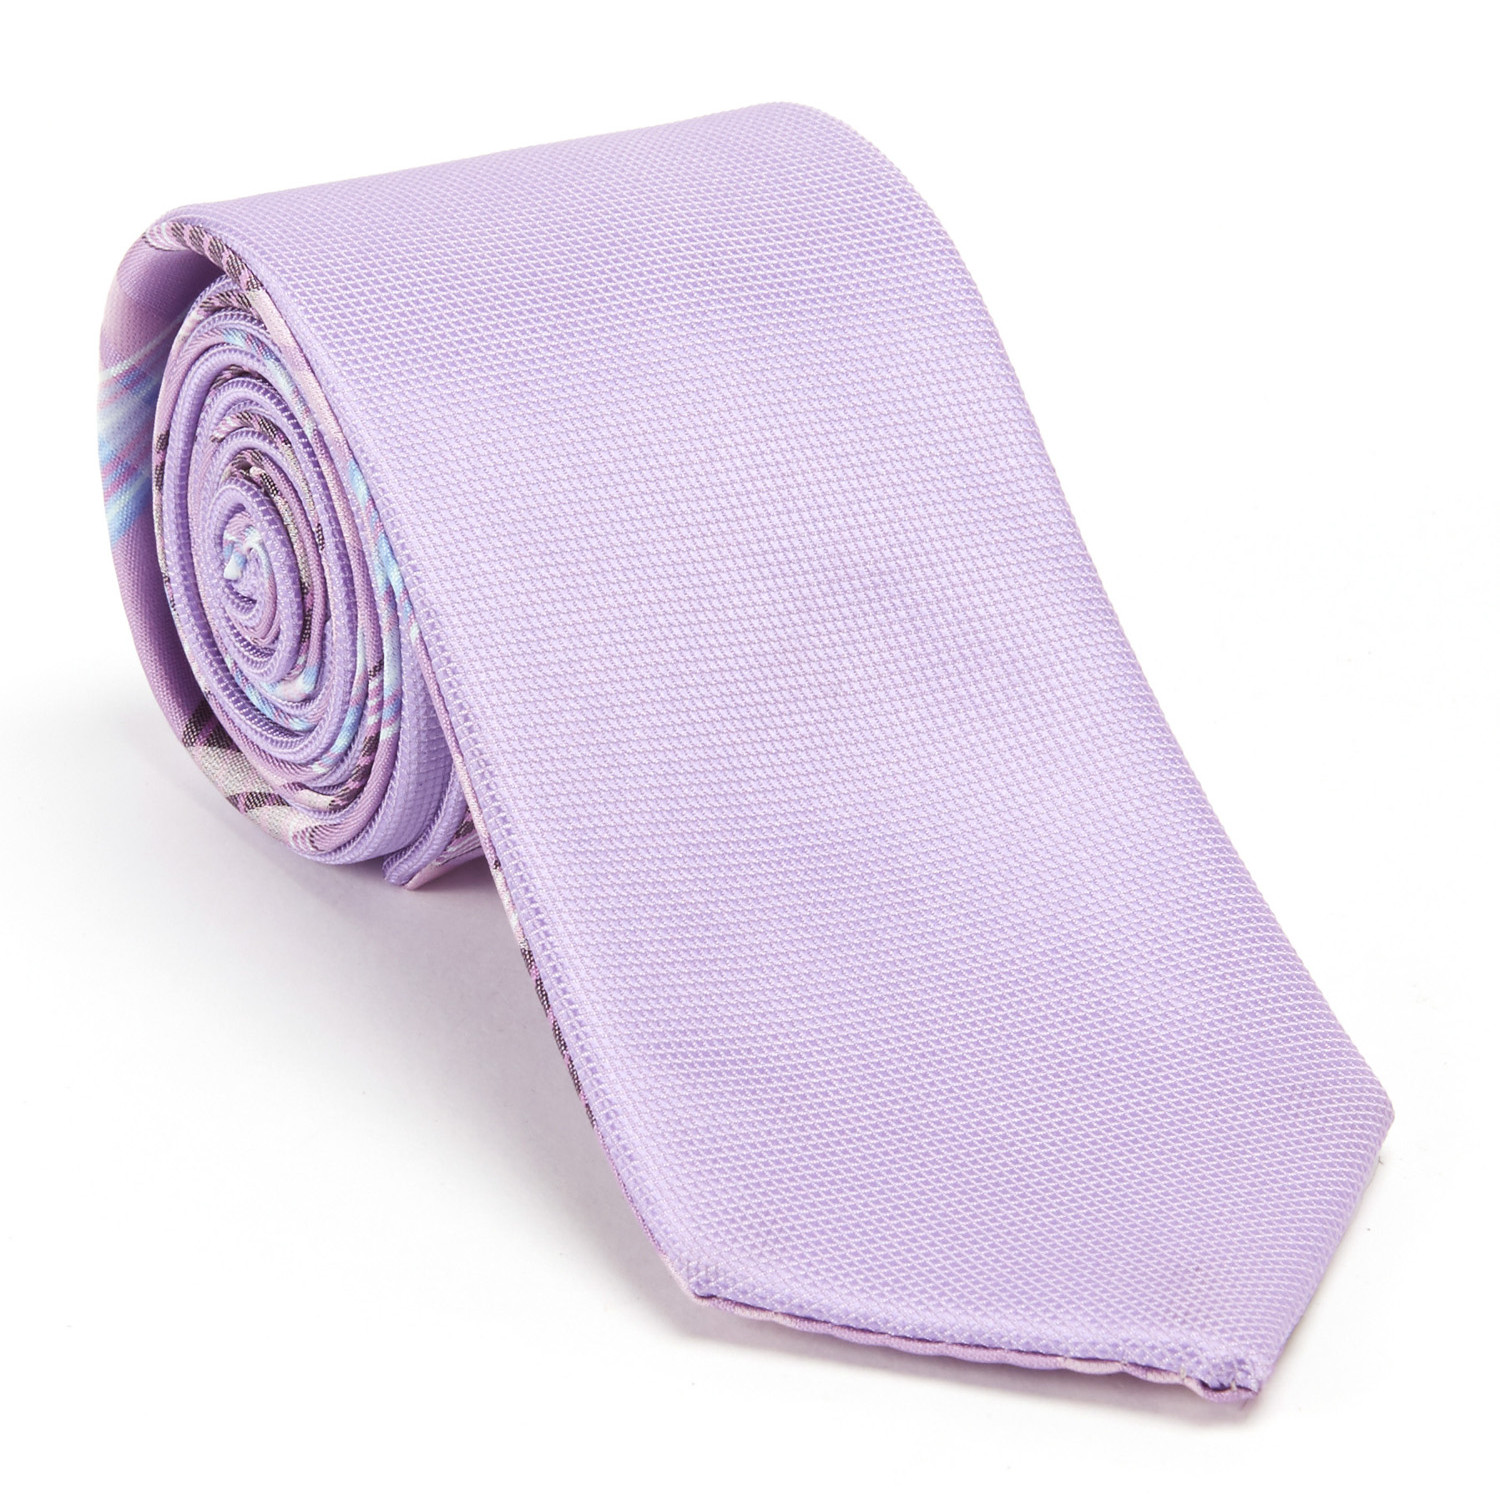 Reversible Plaid Tie + Silver Tie Bar Set // Lavender - Reversible Ties ...